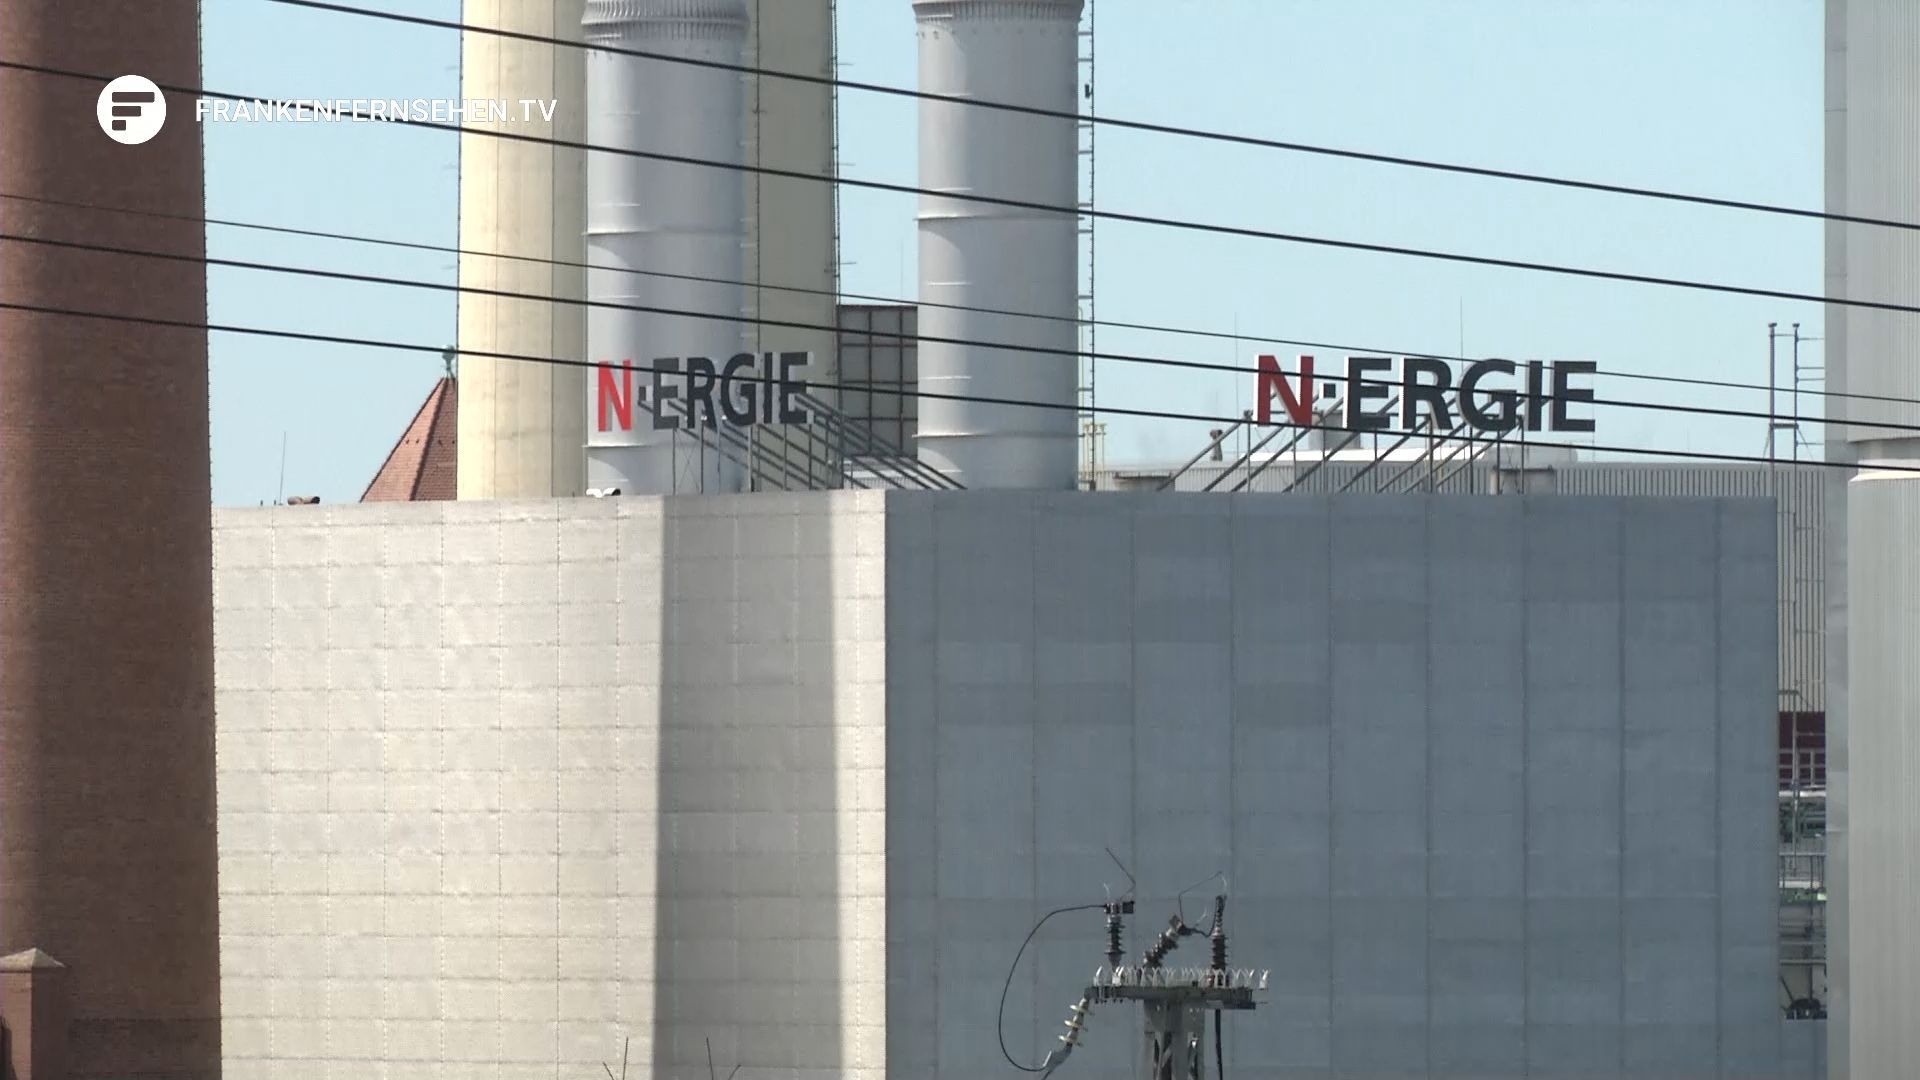 N-Ergie zieht Bilanz: Strom und Erdgas Preise sinken wieder